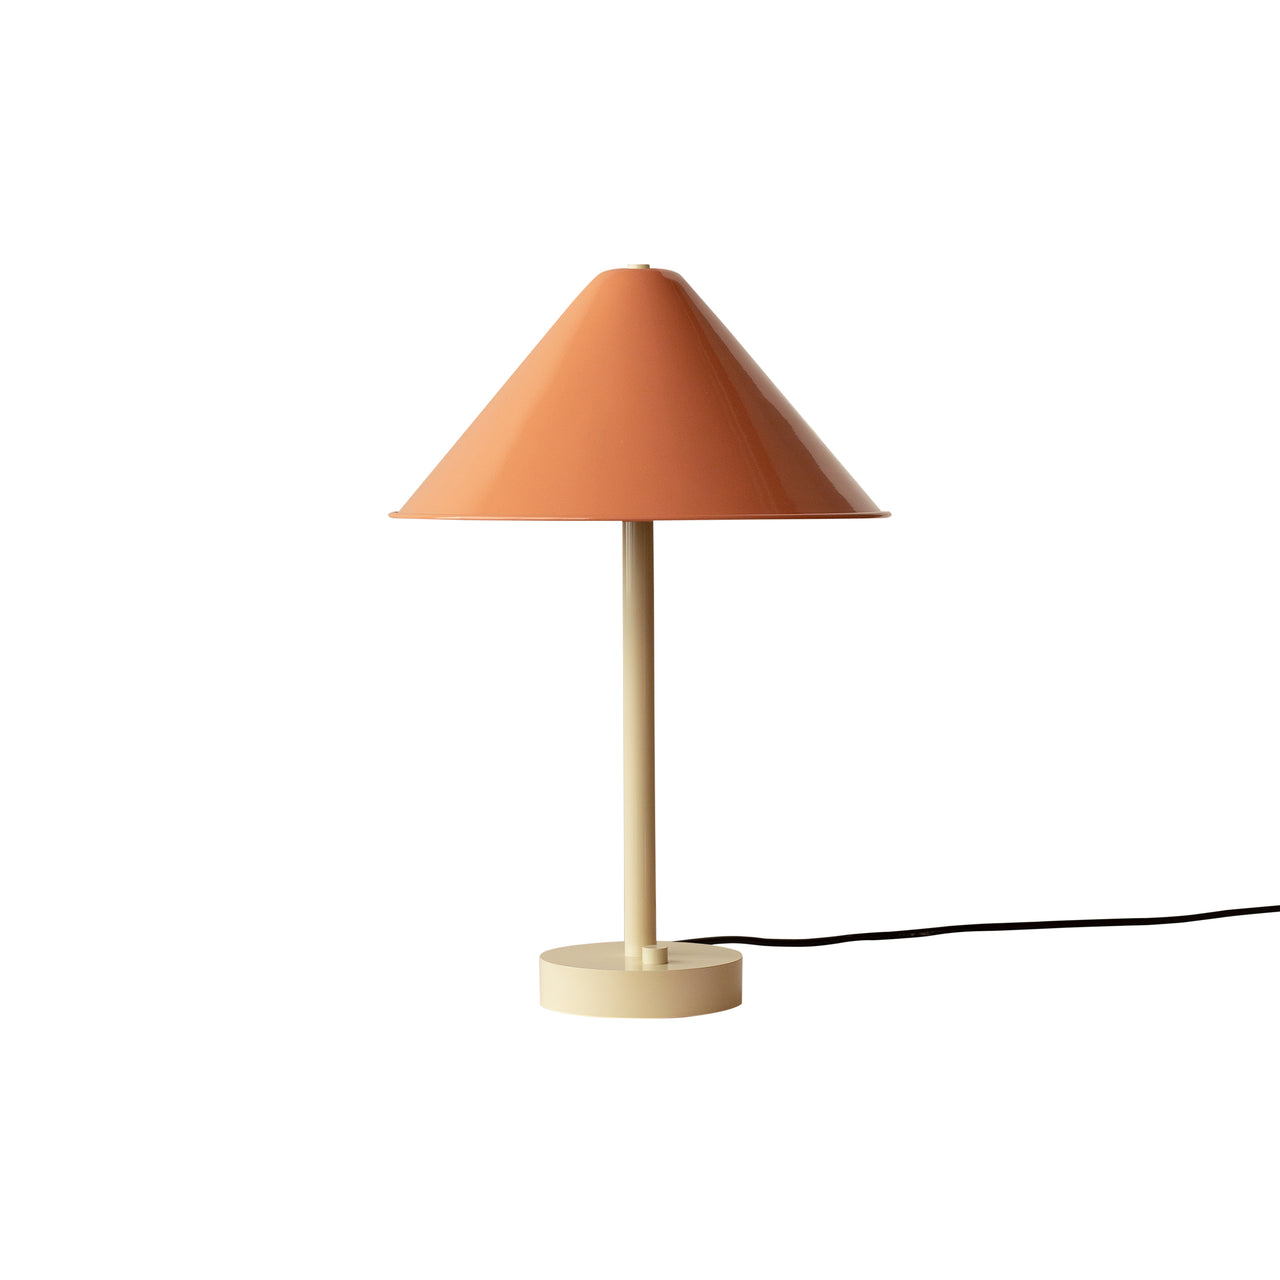 Eave Table Lamp: Peach + Bone